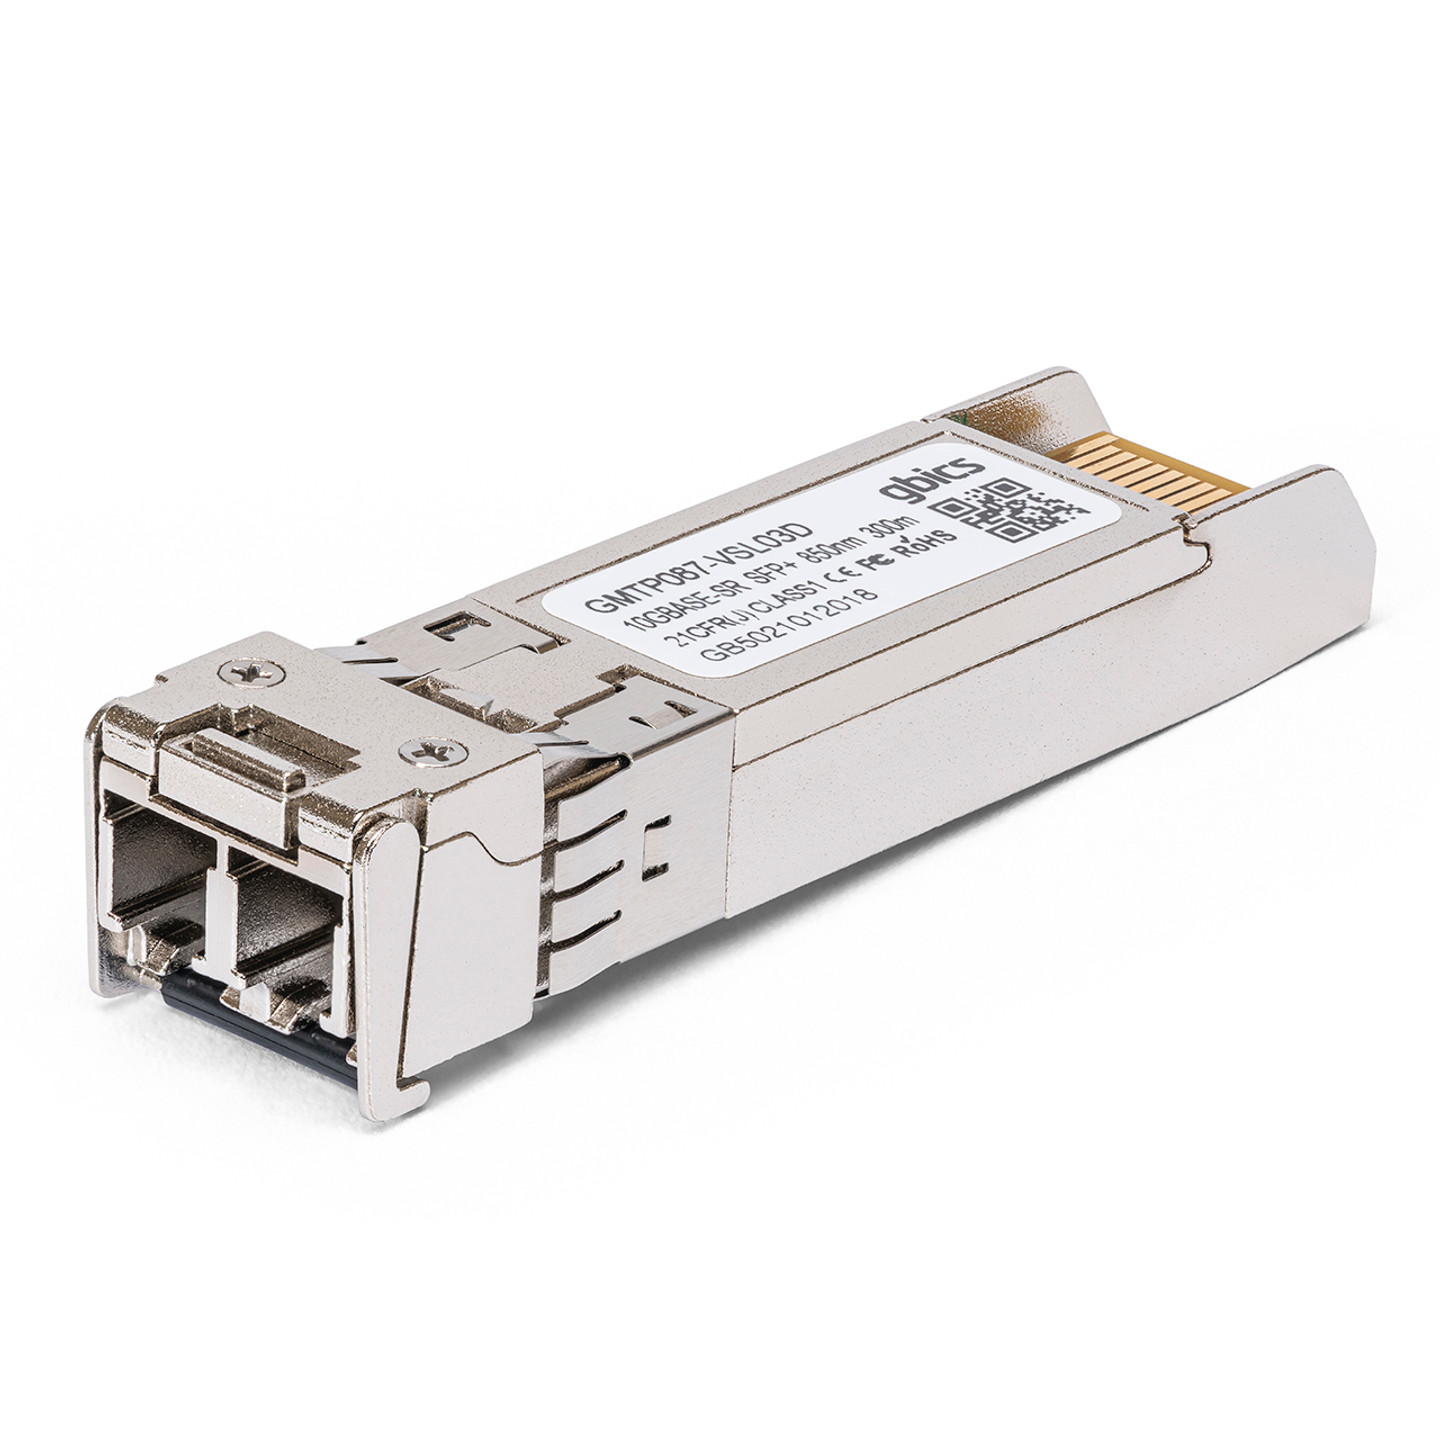 J9150A HP Procurve Compatible 10GBASE-SR SFP+ 850nm 300m DOM Transceiver  Module